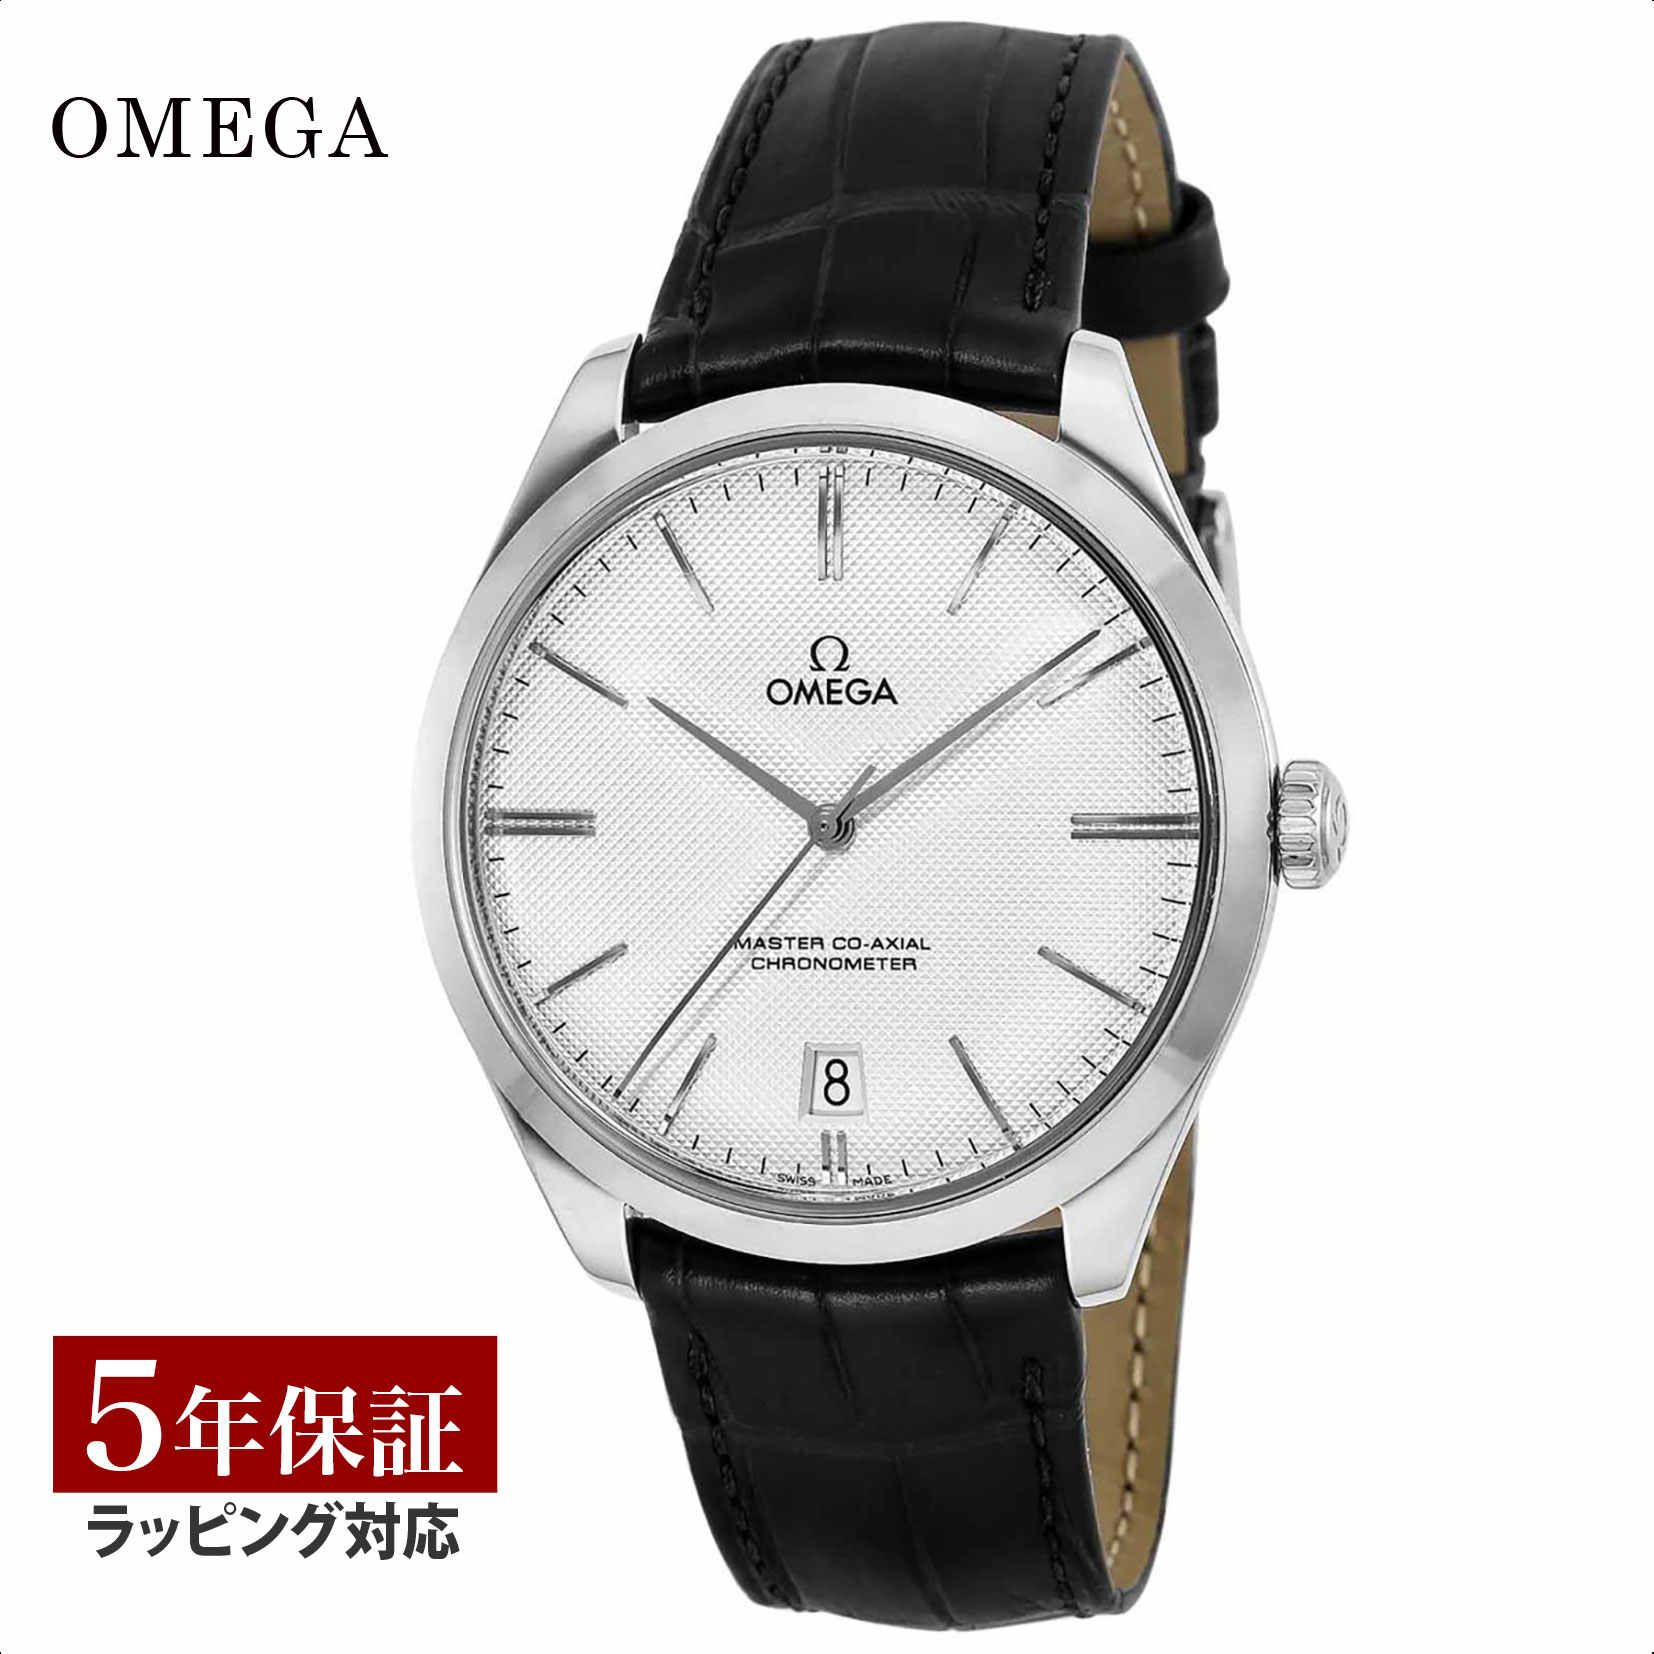 【ノベルティープレゼント】 オメガ OMEGA メンズ 時計 DE VILLE デ・ビル 手巻 シルバー 432.53.40.21.02.004 時計 腕時計 高級腕時計 ブランド